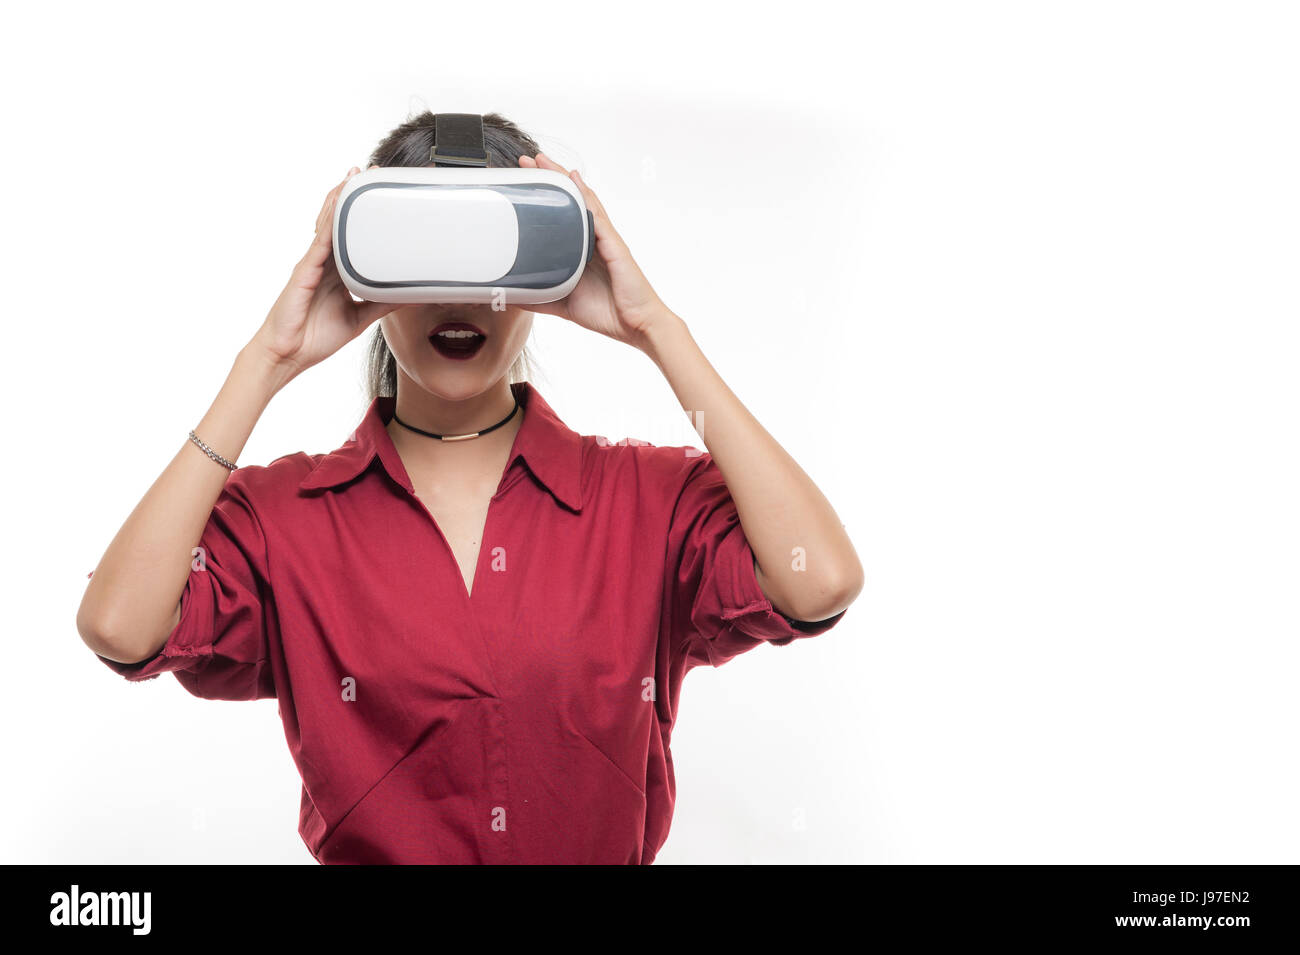 Une scène d'action de Young attractive Asian businesswoman en chemise rouge à l'aide de lunettes VR. L'expérience de réalité virtuelle pour l'activité dans le futur concept development Banque D'Images